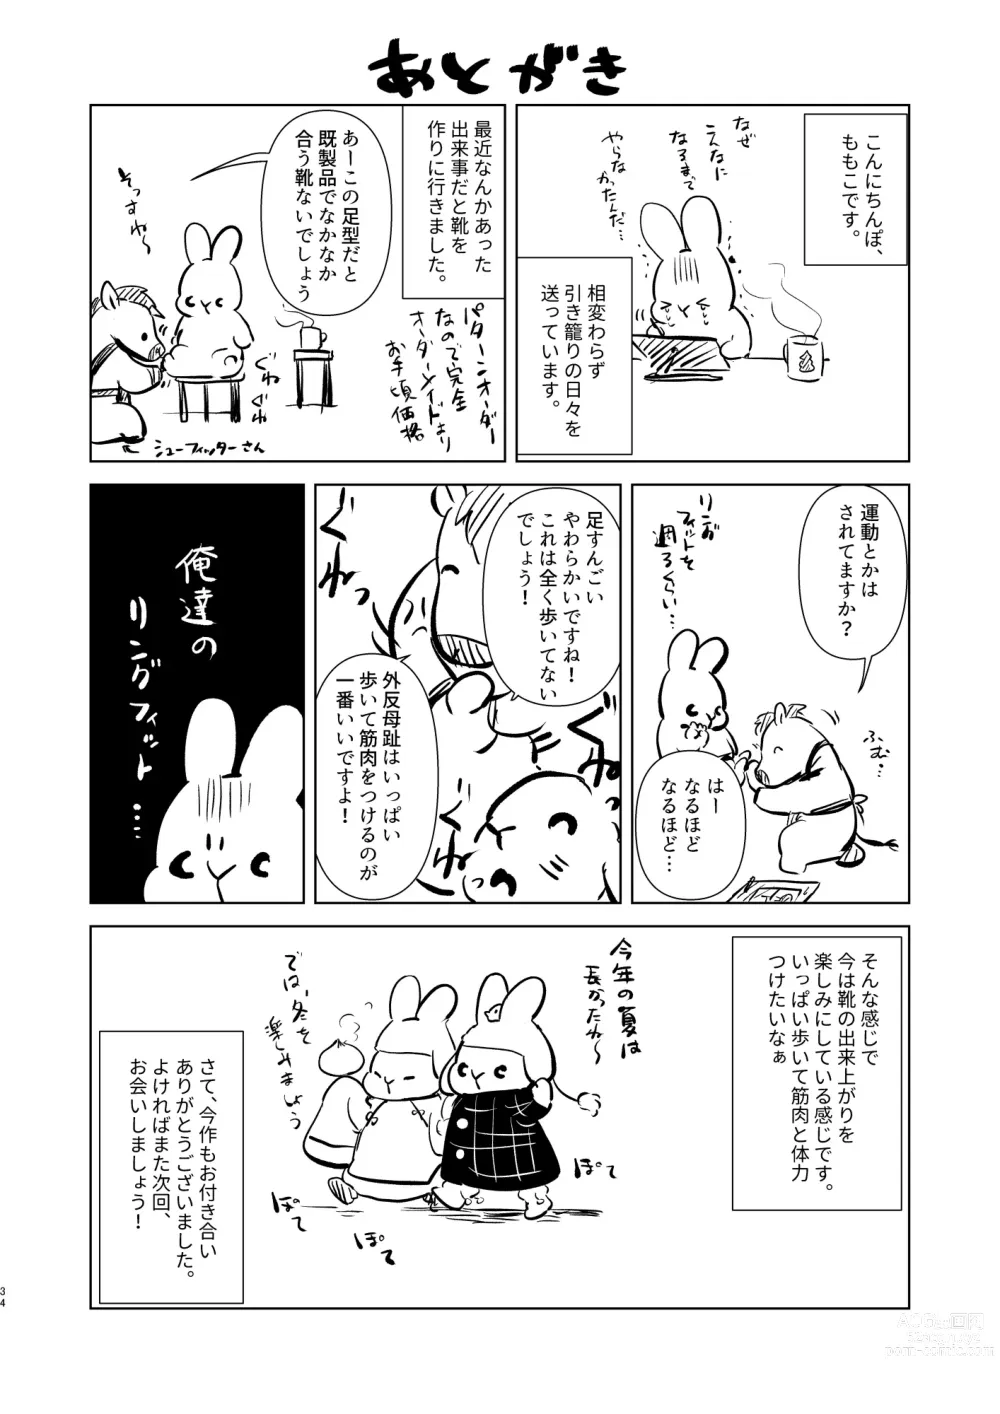 Page 33 of doujinshi Tsumugi-chan no Seichouki